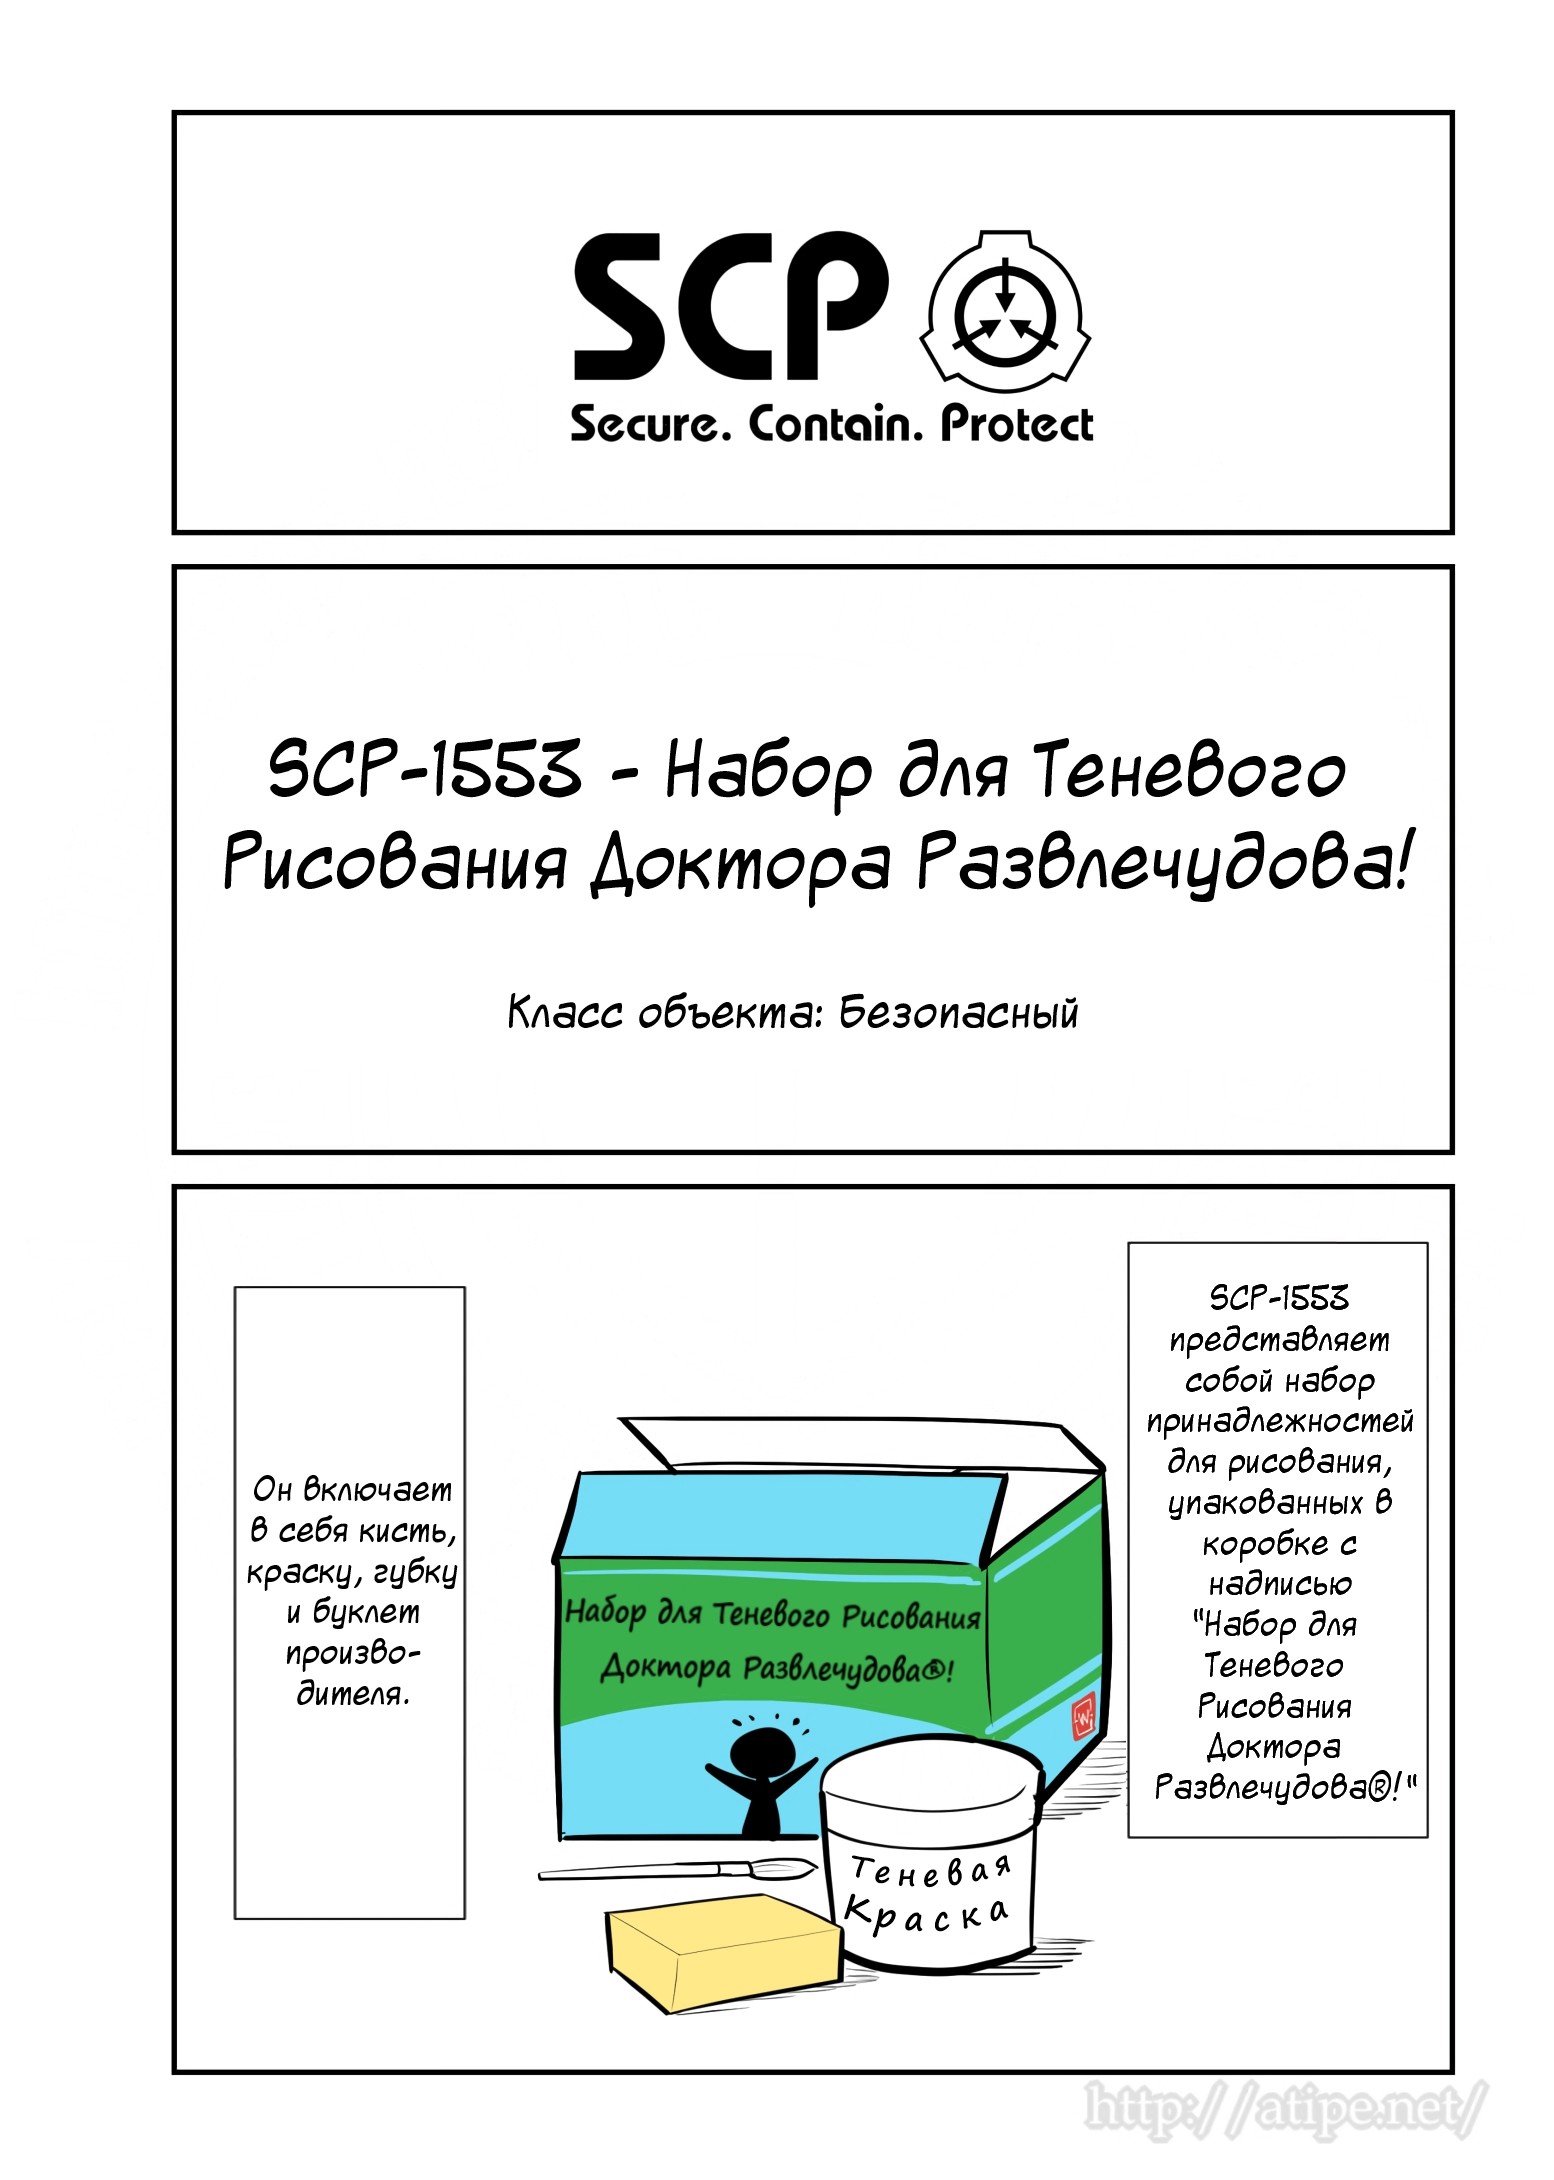 Упрощенный SCP 1 - 57 SCP-1553